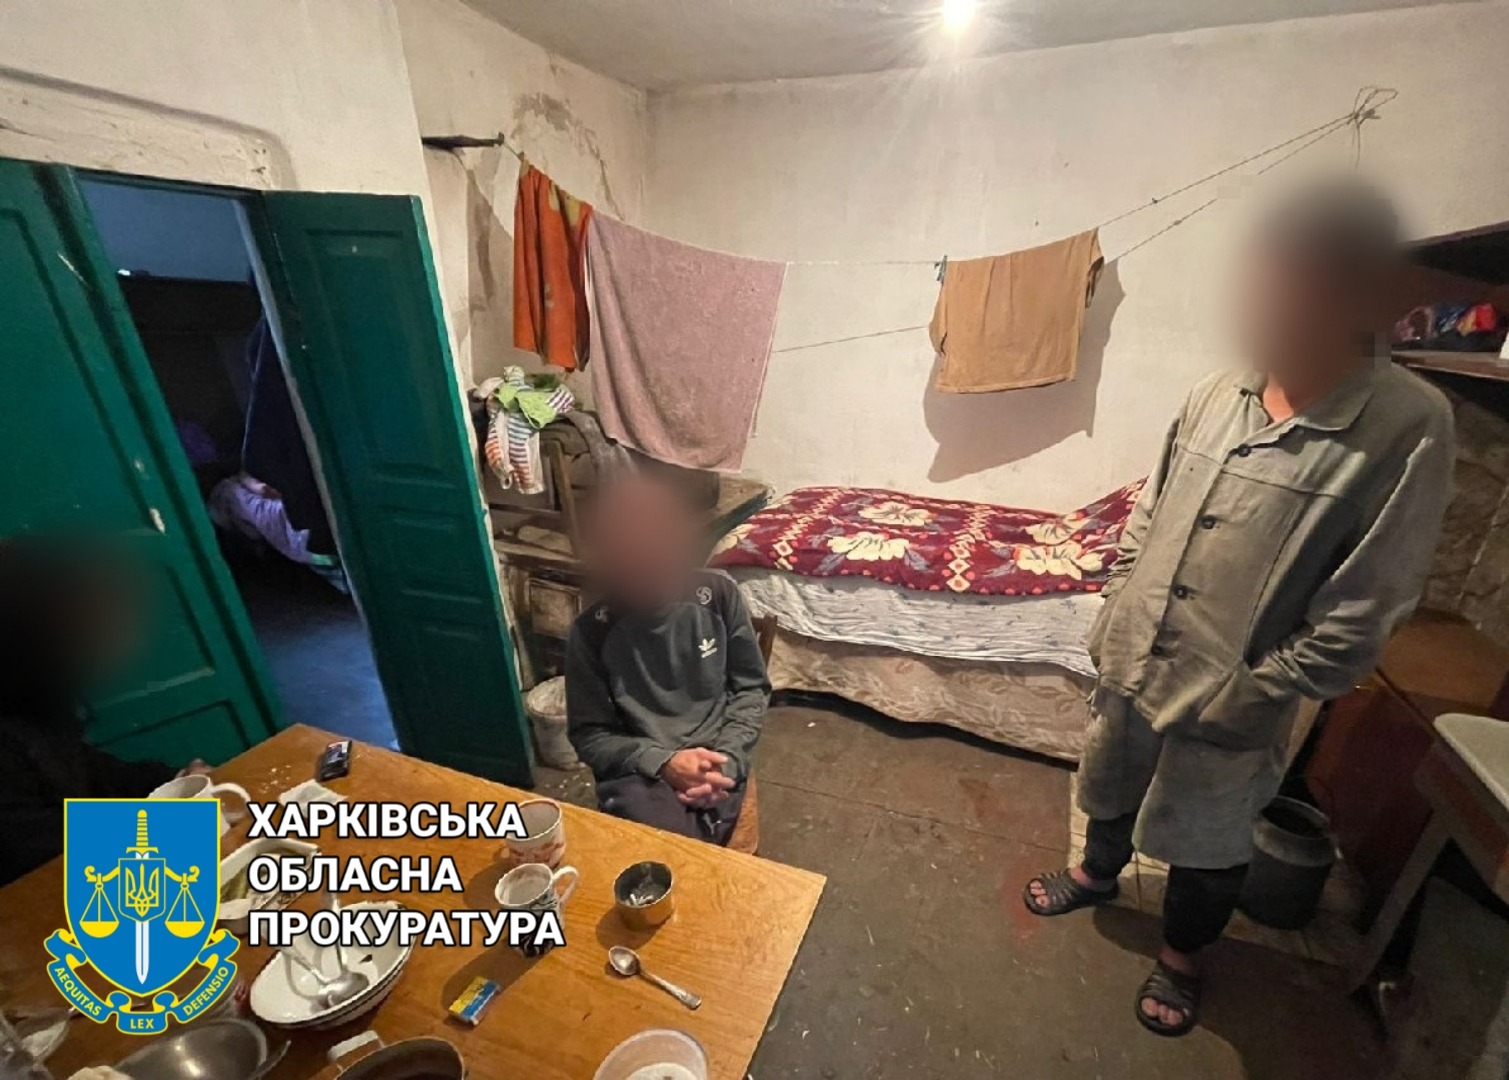 Рабовладелец из Харьковской области пойдет под суд